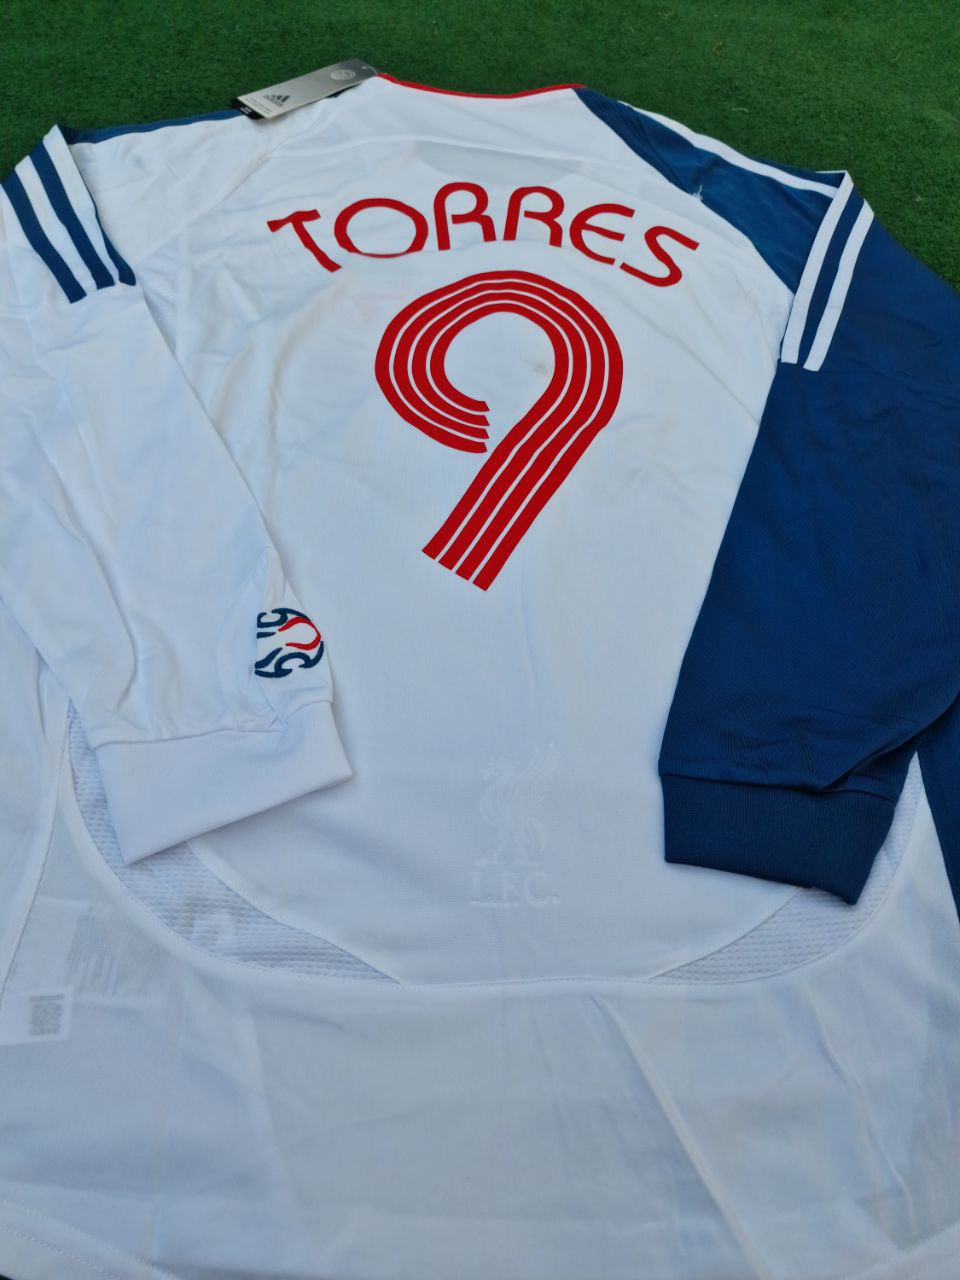 Fernando Torres Liverpool Weißes Retro-Trikot